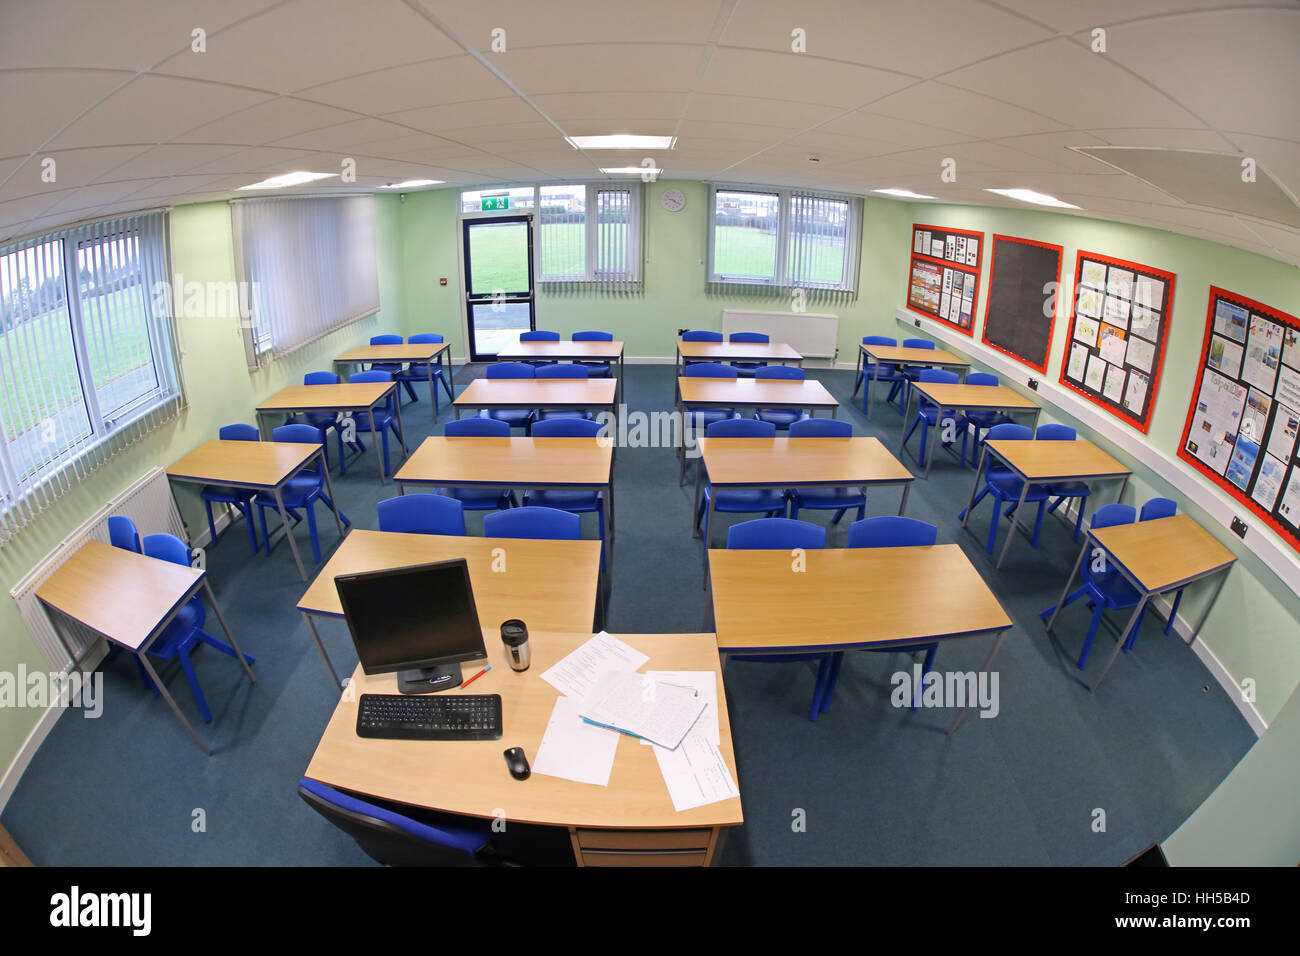 Weitwinkelansicht eines neu erbauten Schulklasseraums mit Schreibtischen und Stühlen in traditioneller Anordnung, gegenüber dem Lehrerschreibtisch. Leer, keine Pupillen. Stockfoto